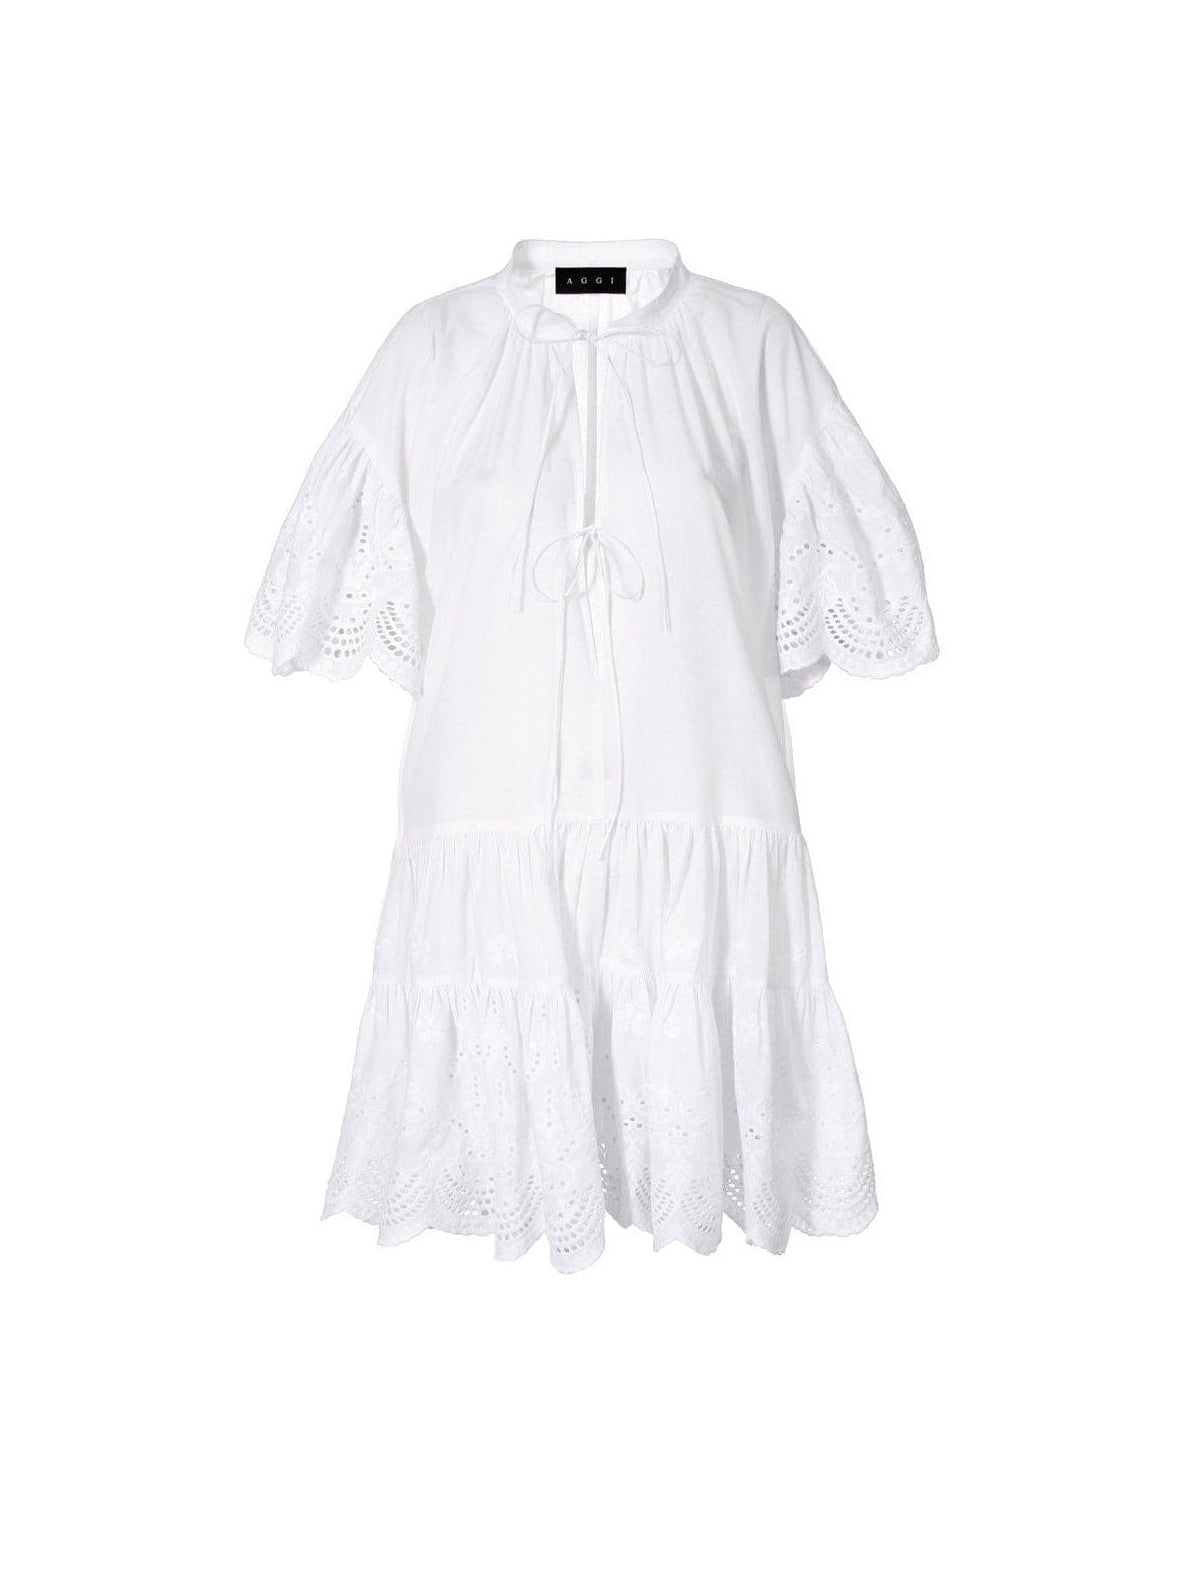 Tenneisha White Dress - AGGI